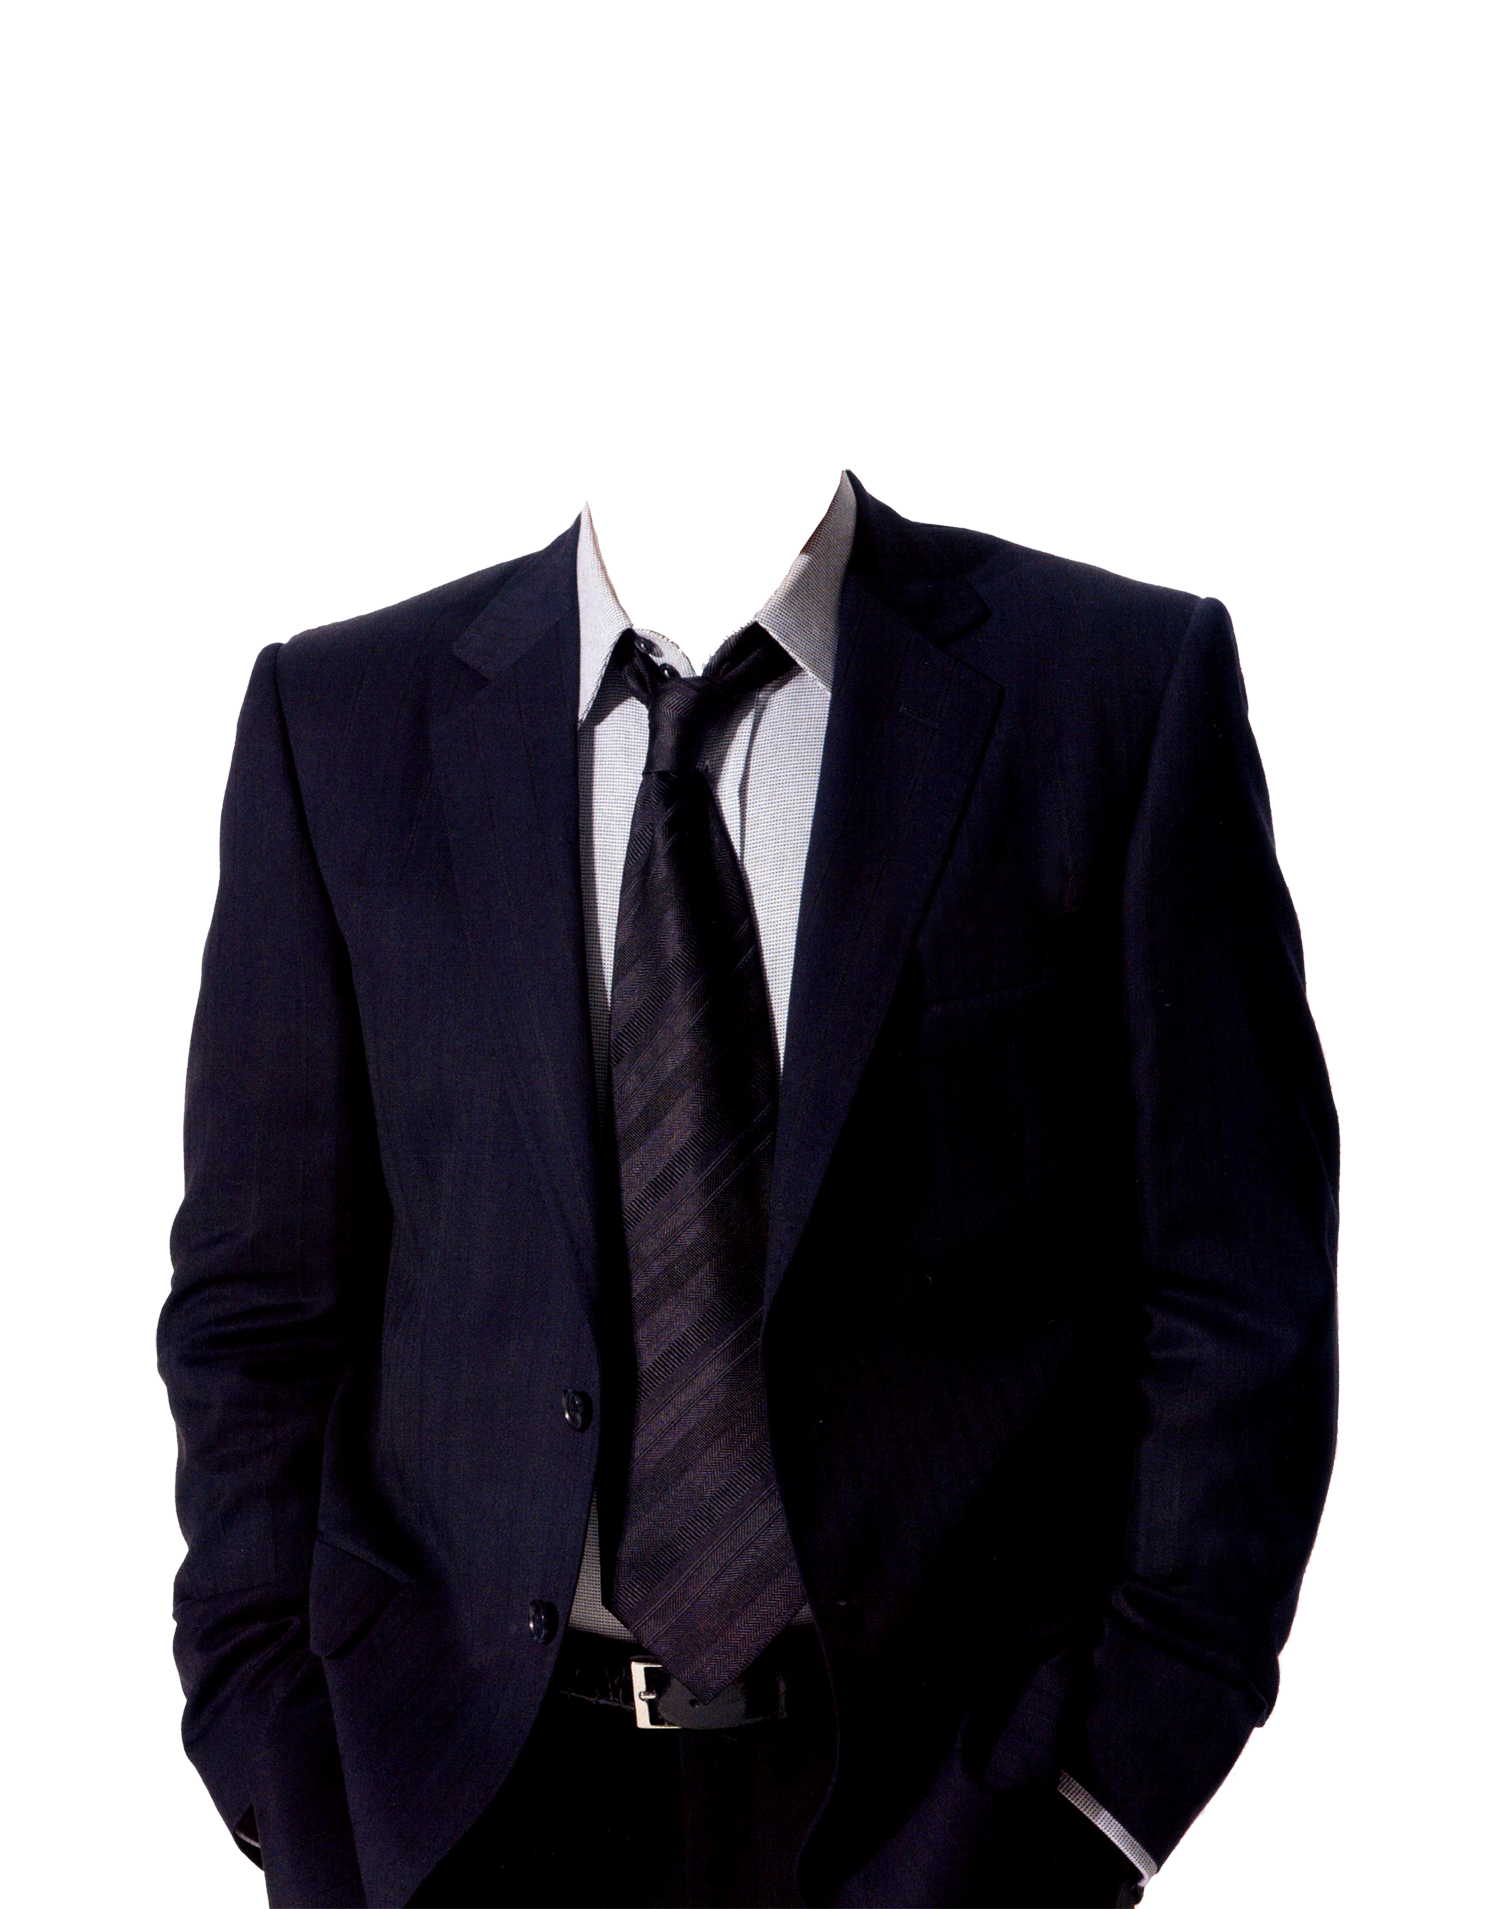 Suit PNG image